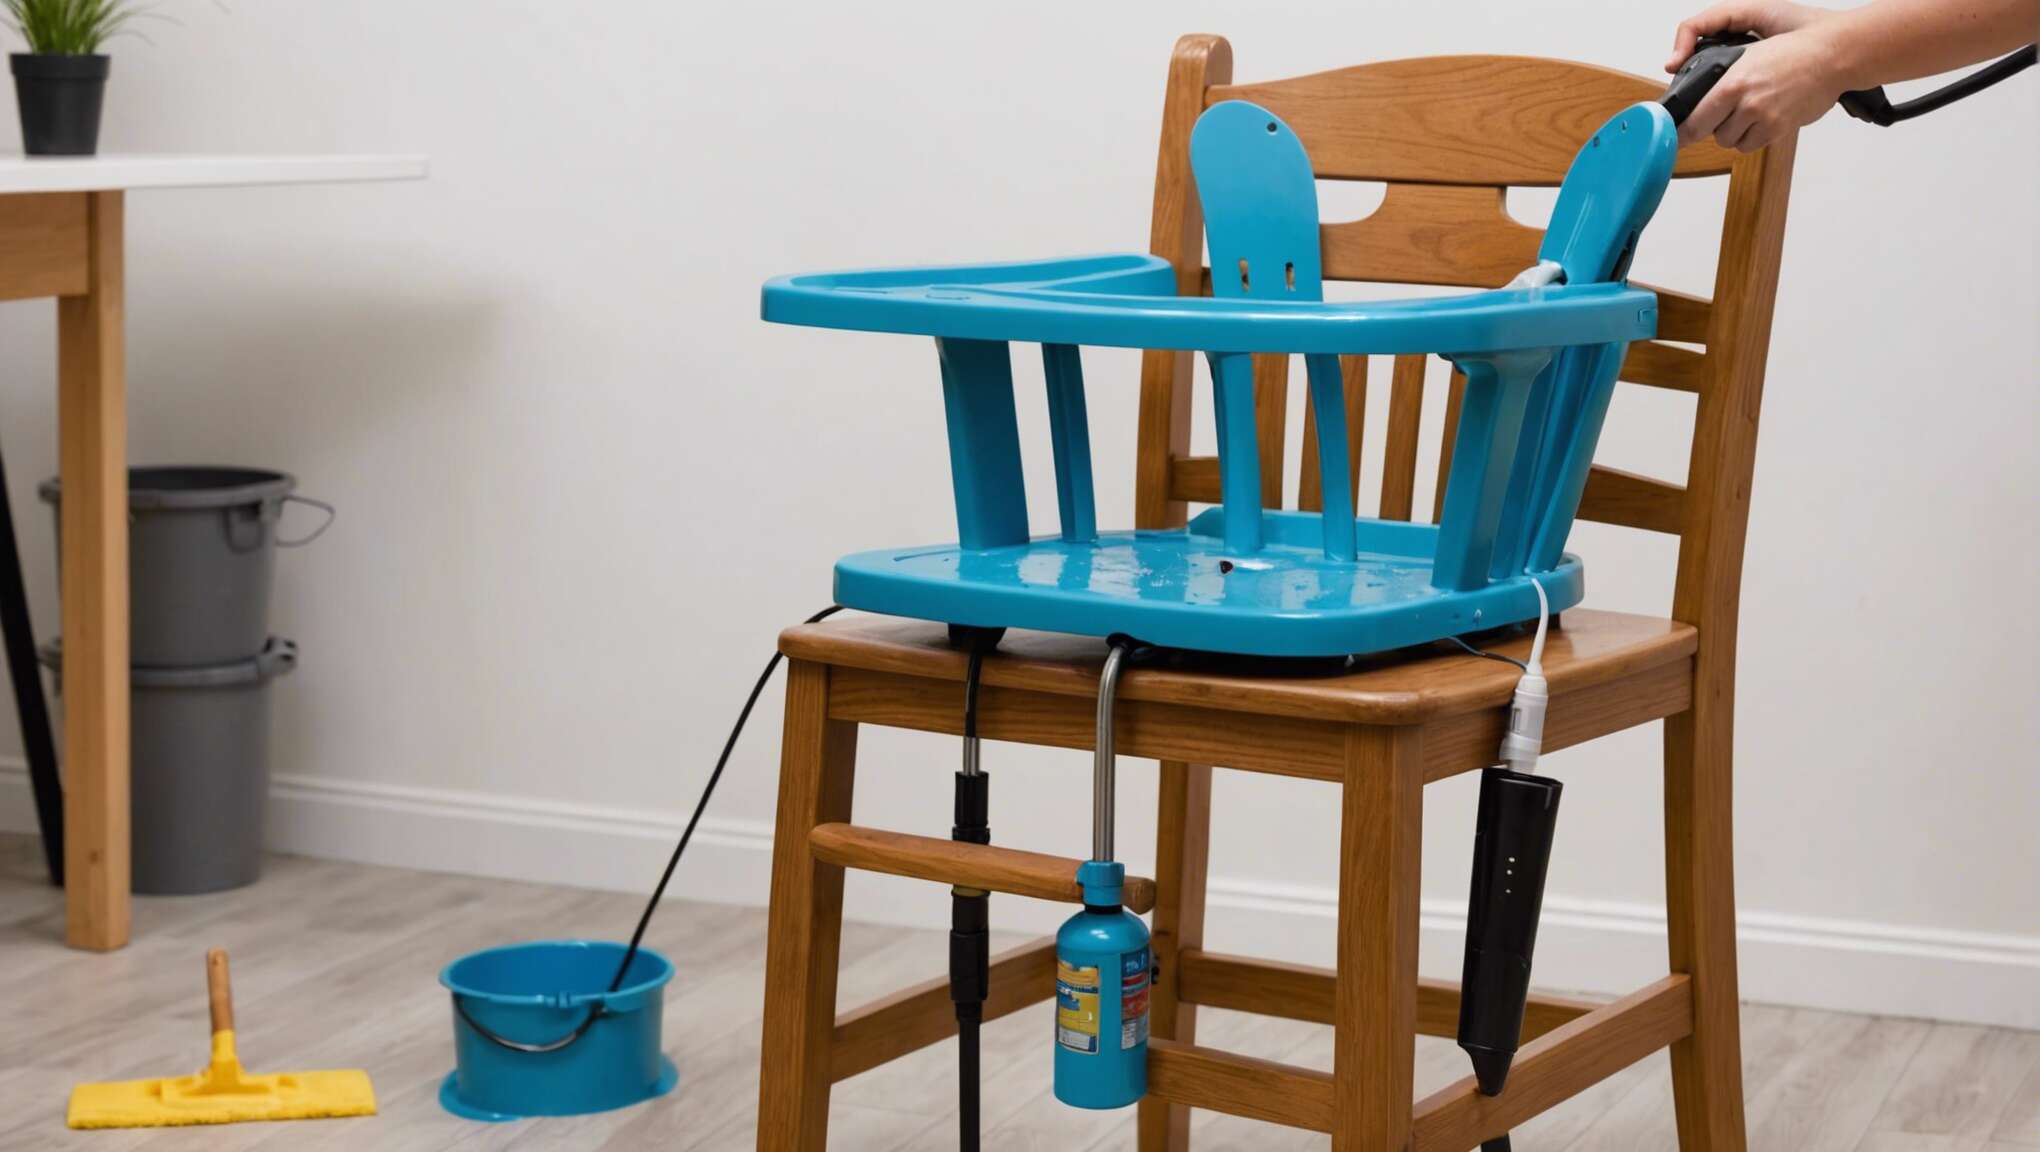 Préparer la chaise haute pour le nettoyage : l'importance du démontage et de l'aspiration